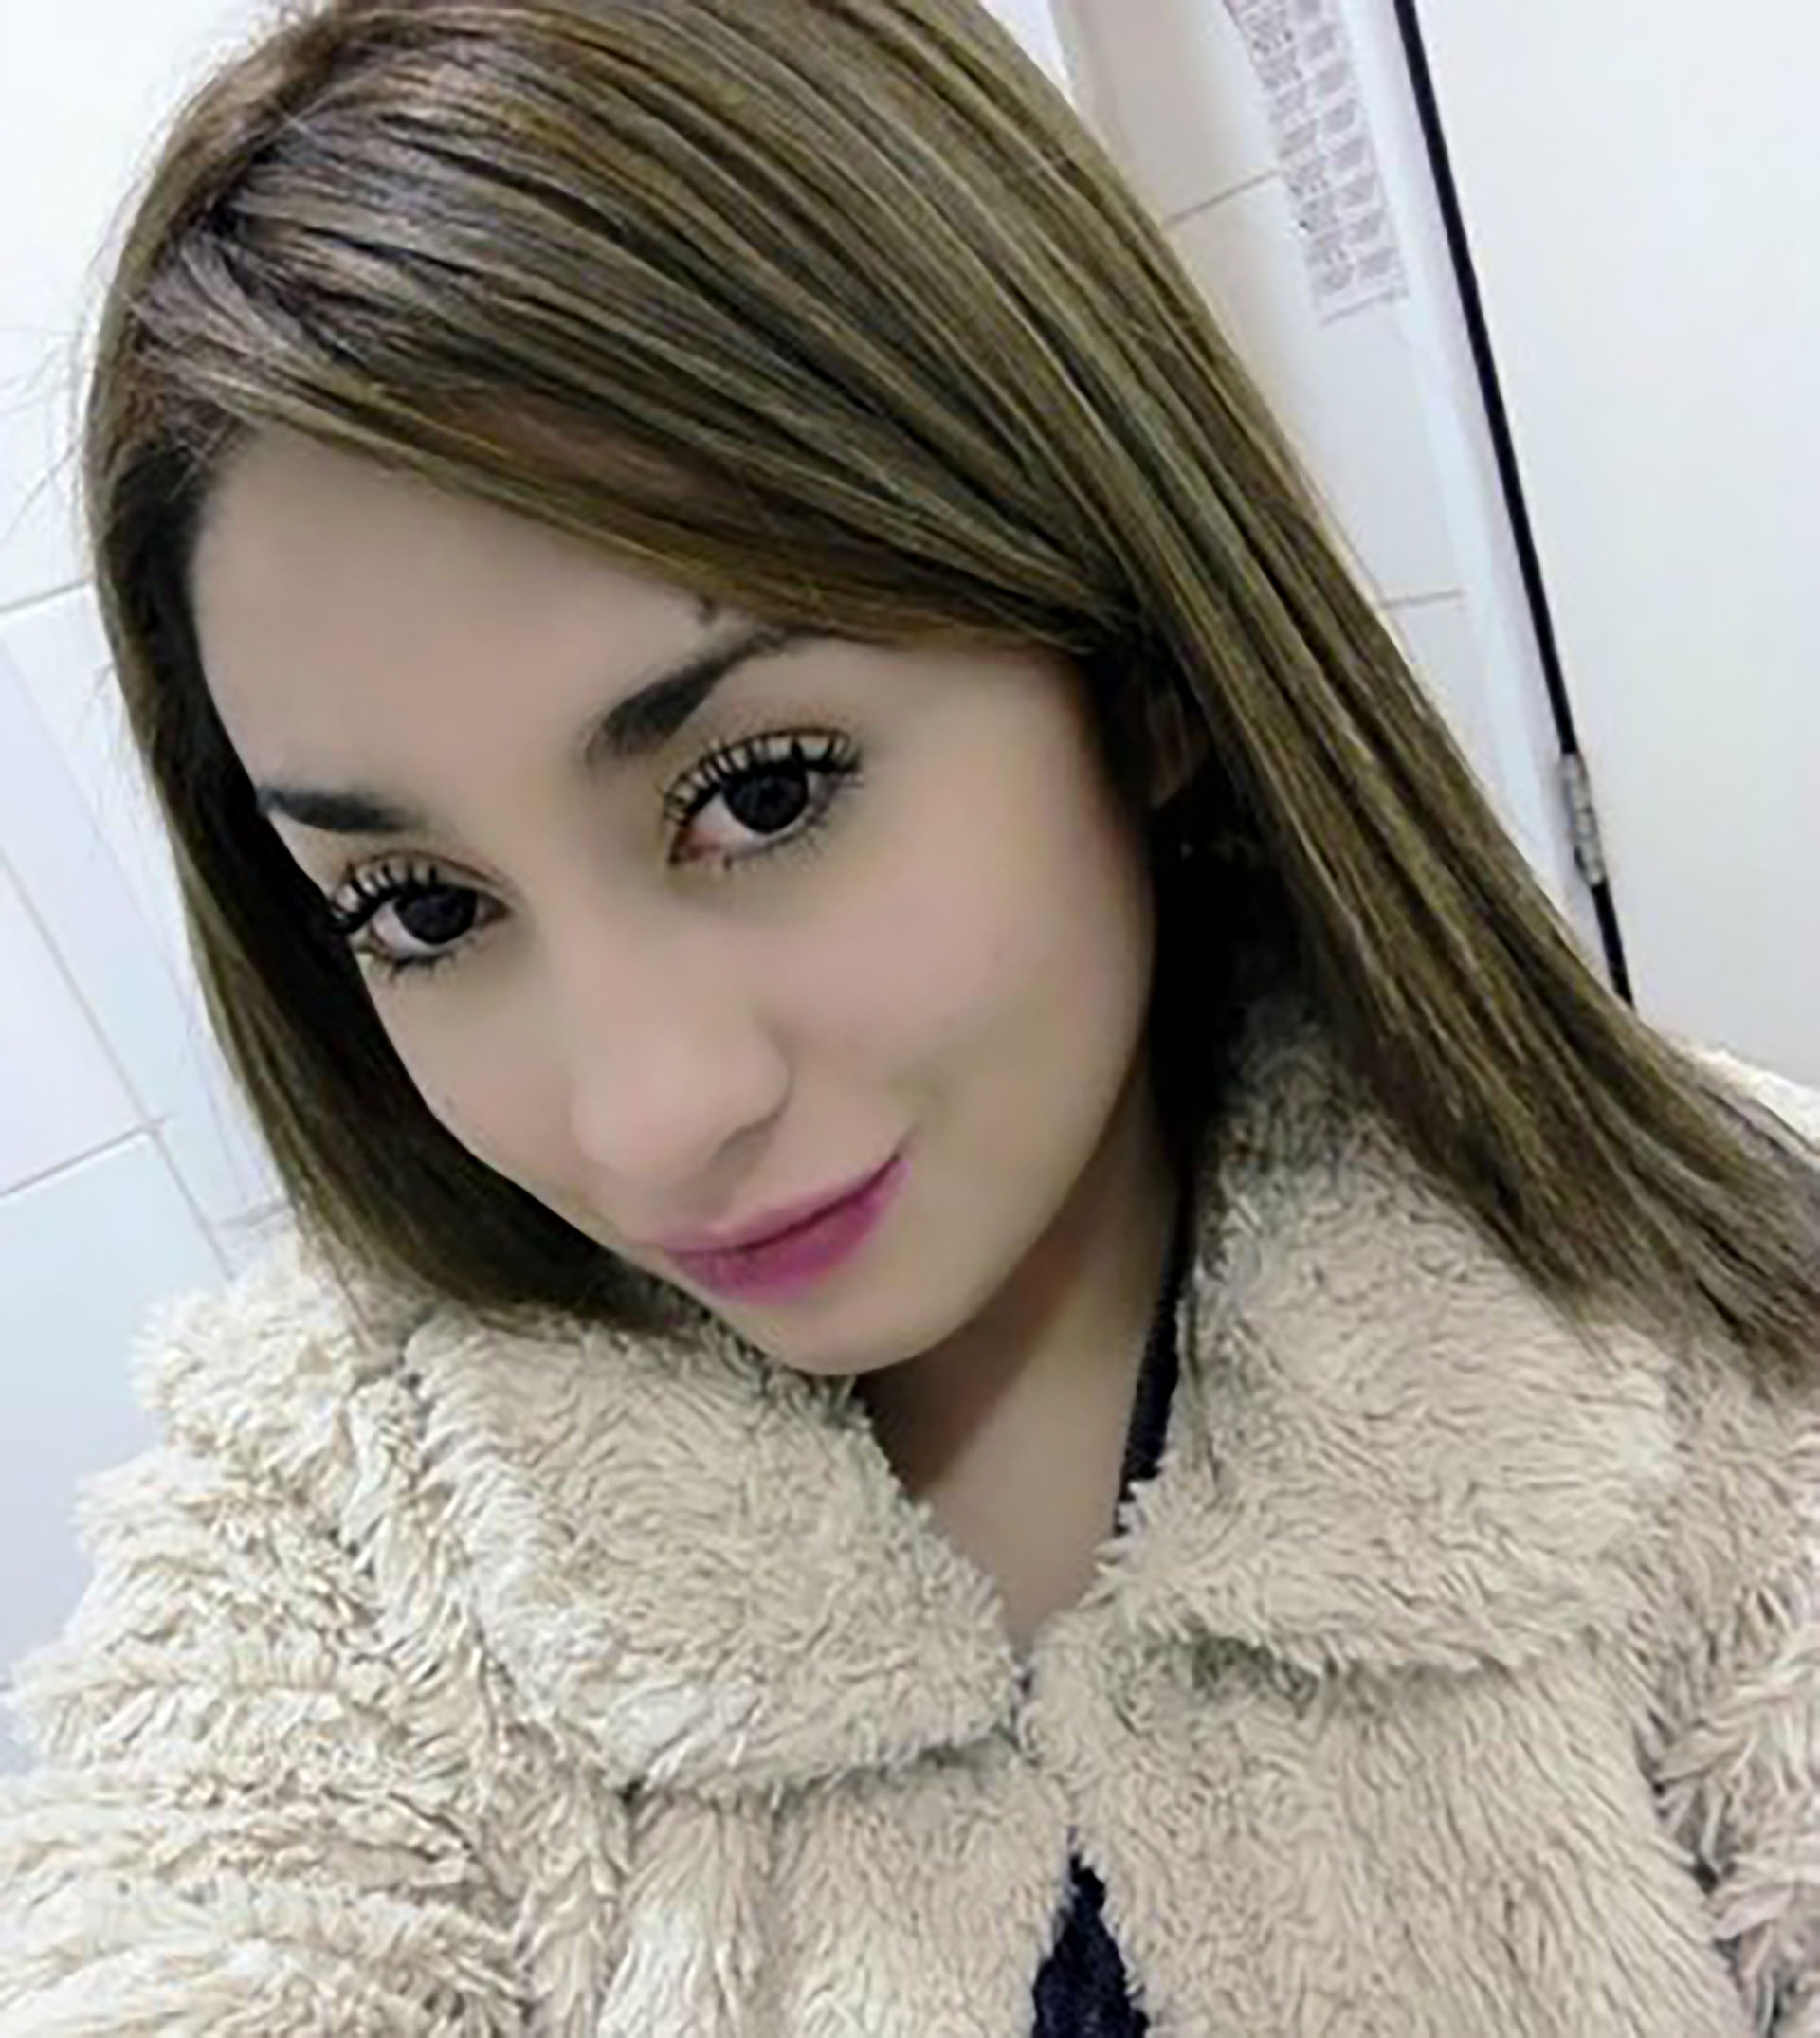 Fernanda Maciel, la joven embarazada fue hallada muerta tras 499 días desaparecida